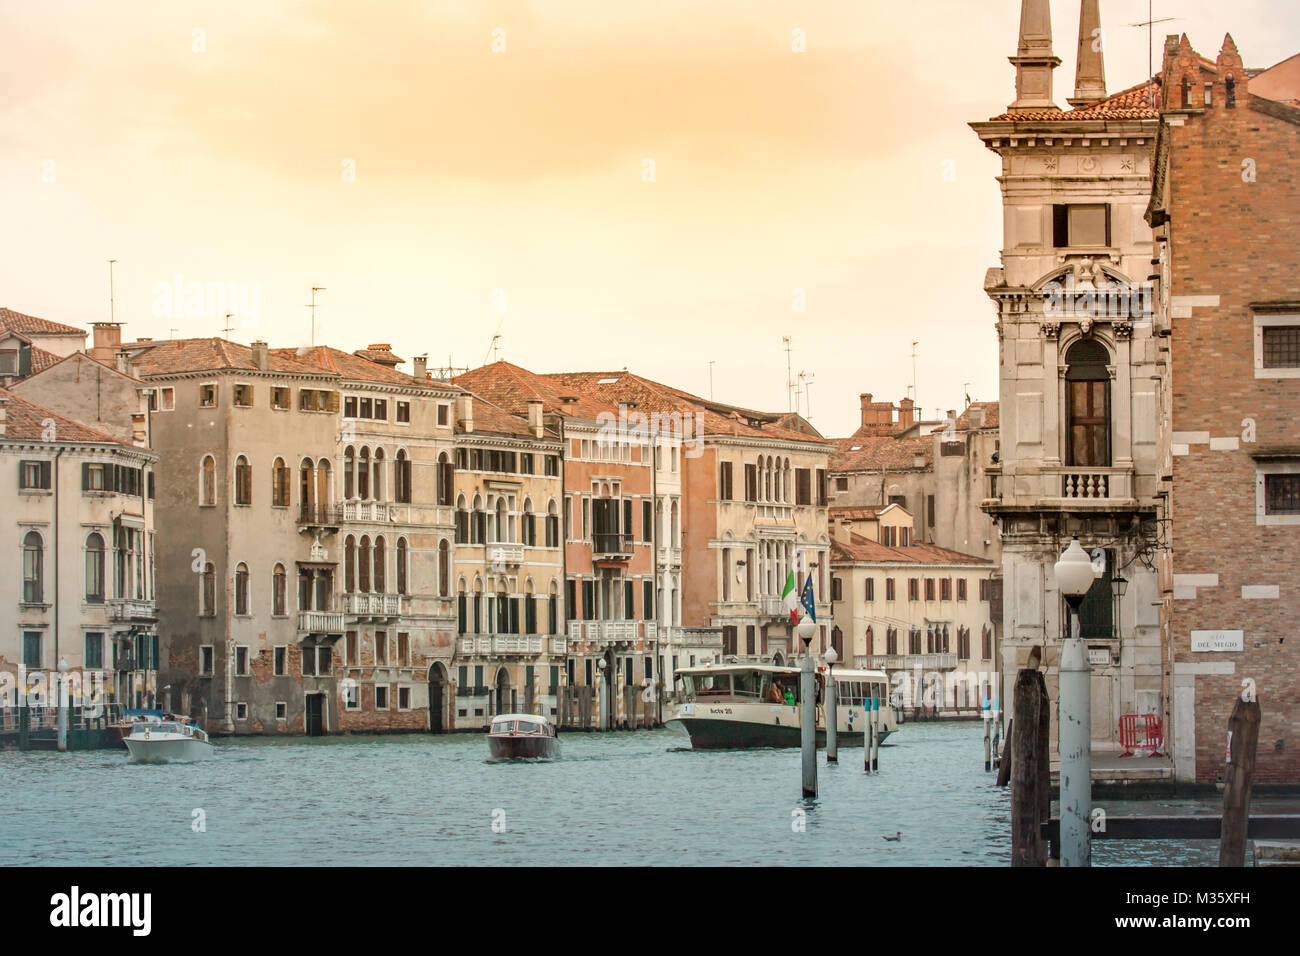 Grand Canal de Venise le trafic de bateaux et bâtiments architecture vénitienne Italie Voyage Banque D'Images